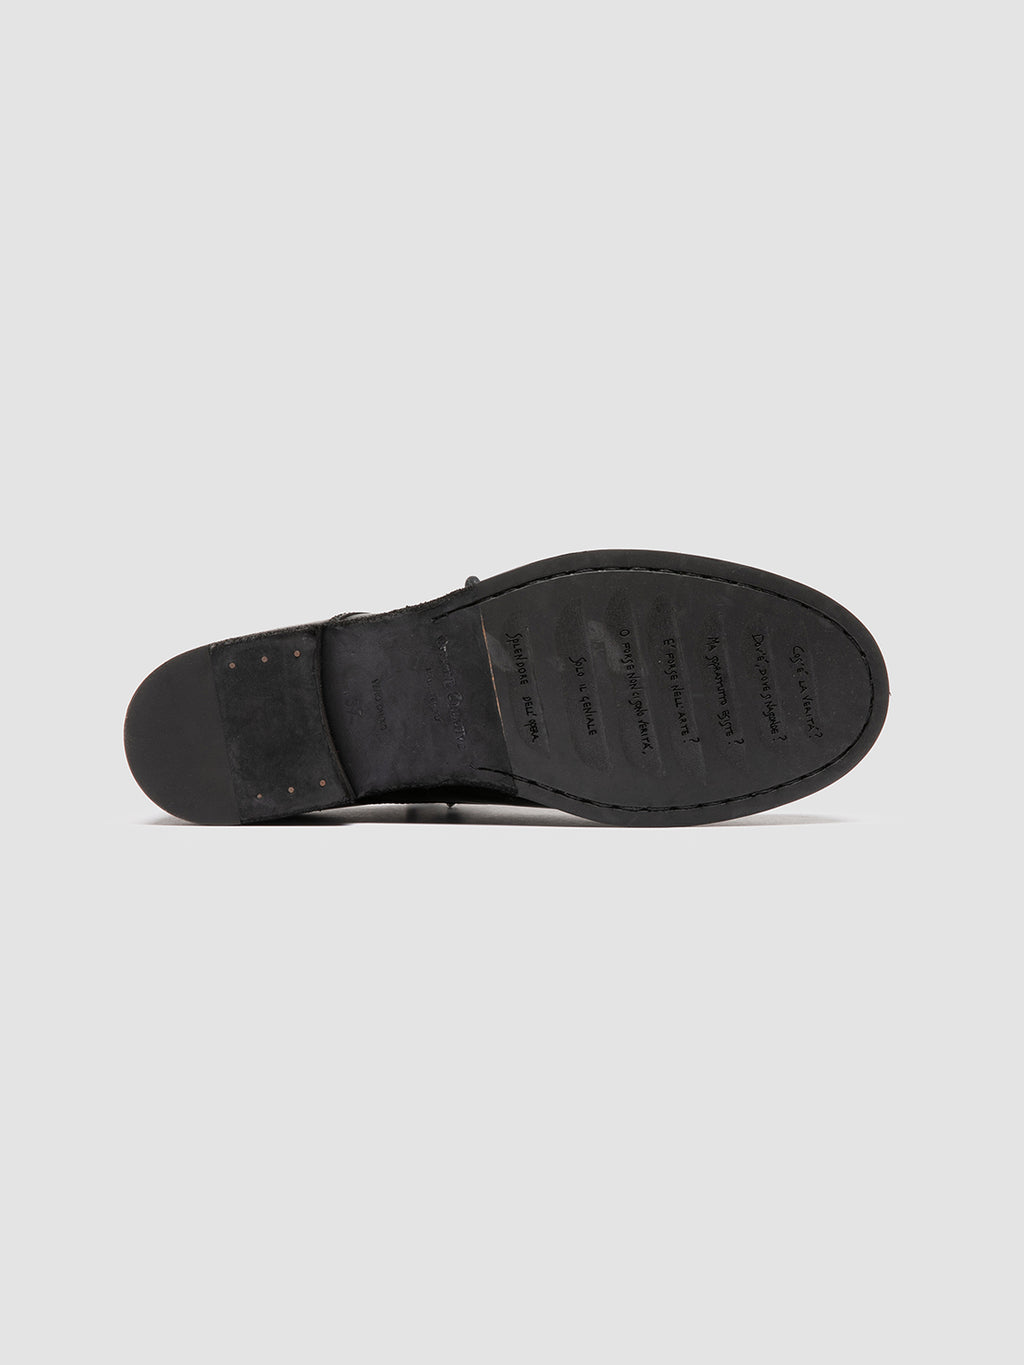 BULLA DD 301 - Black Leather Derby Shoes